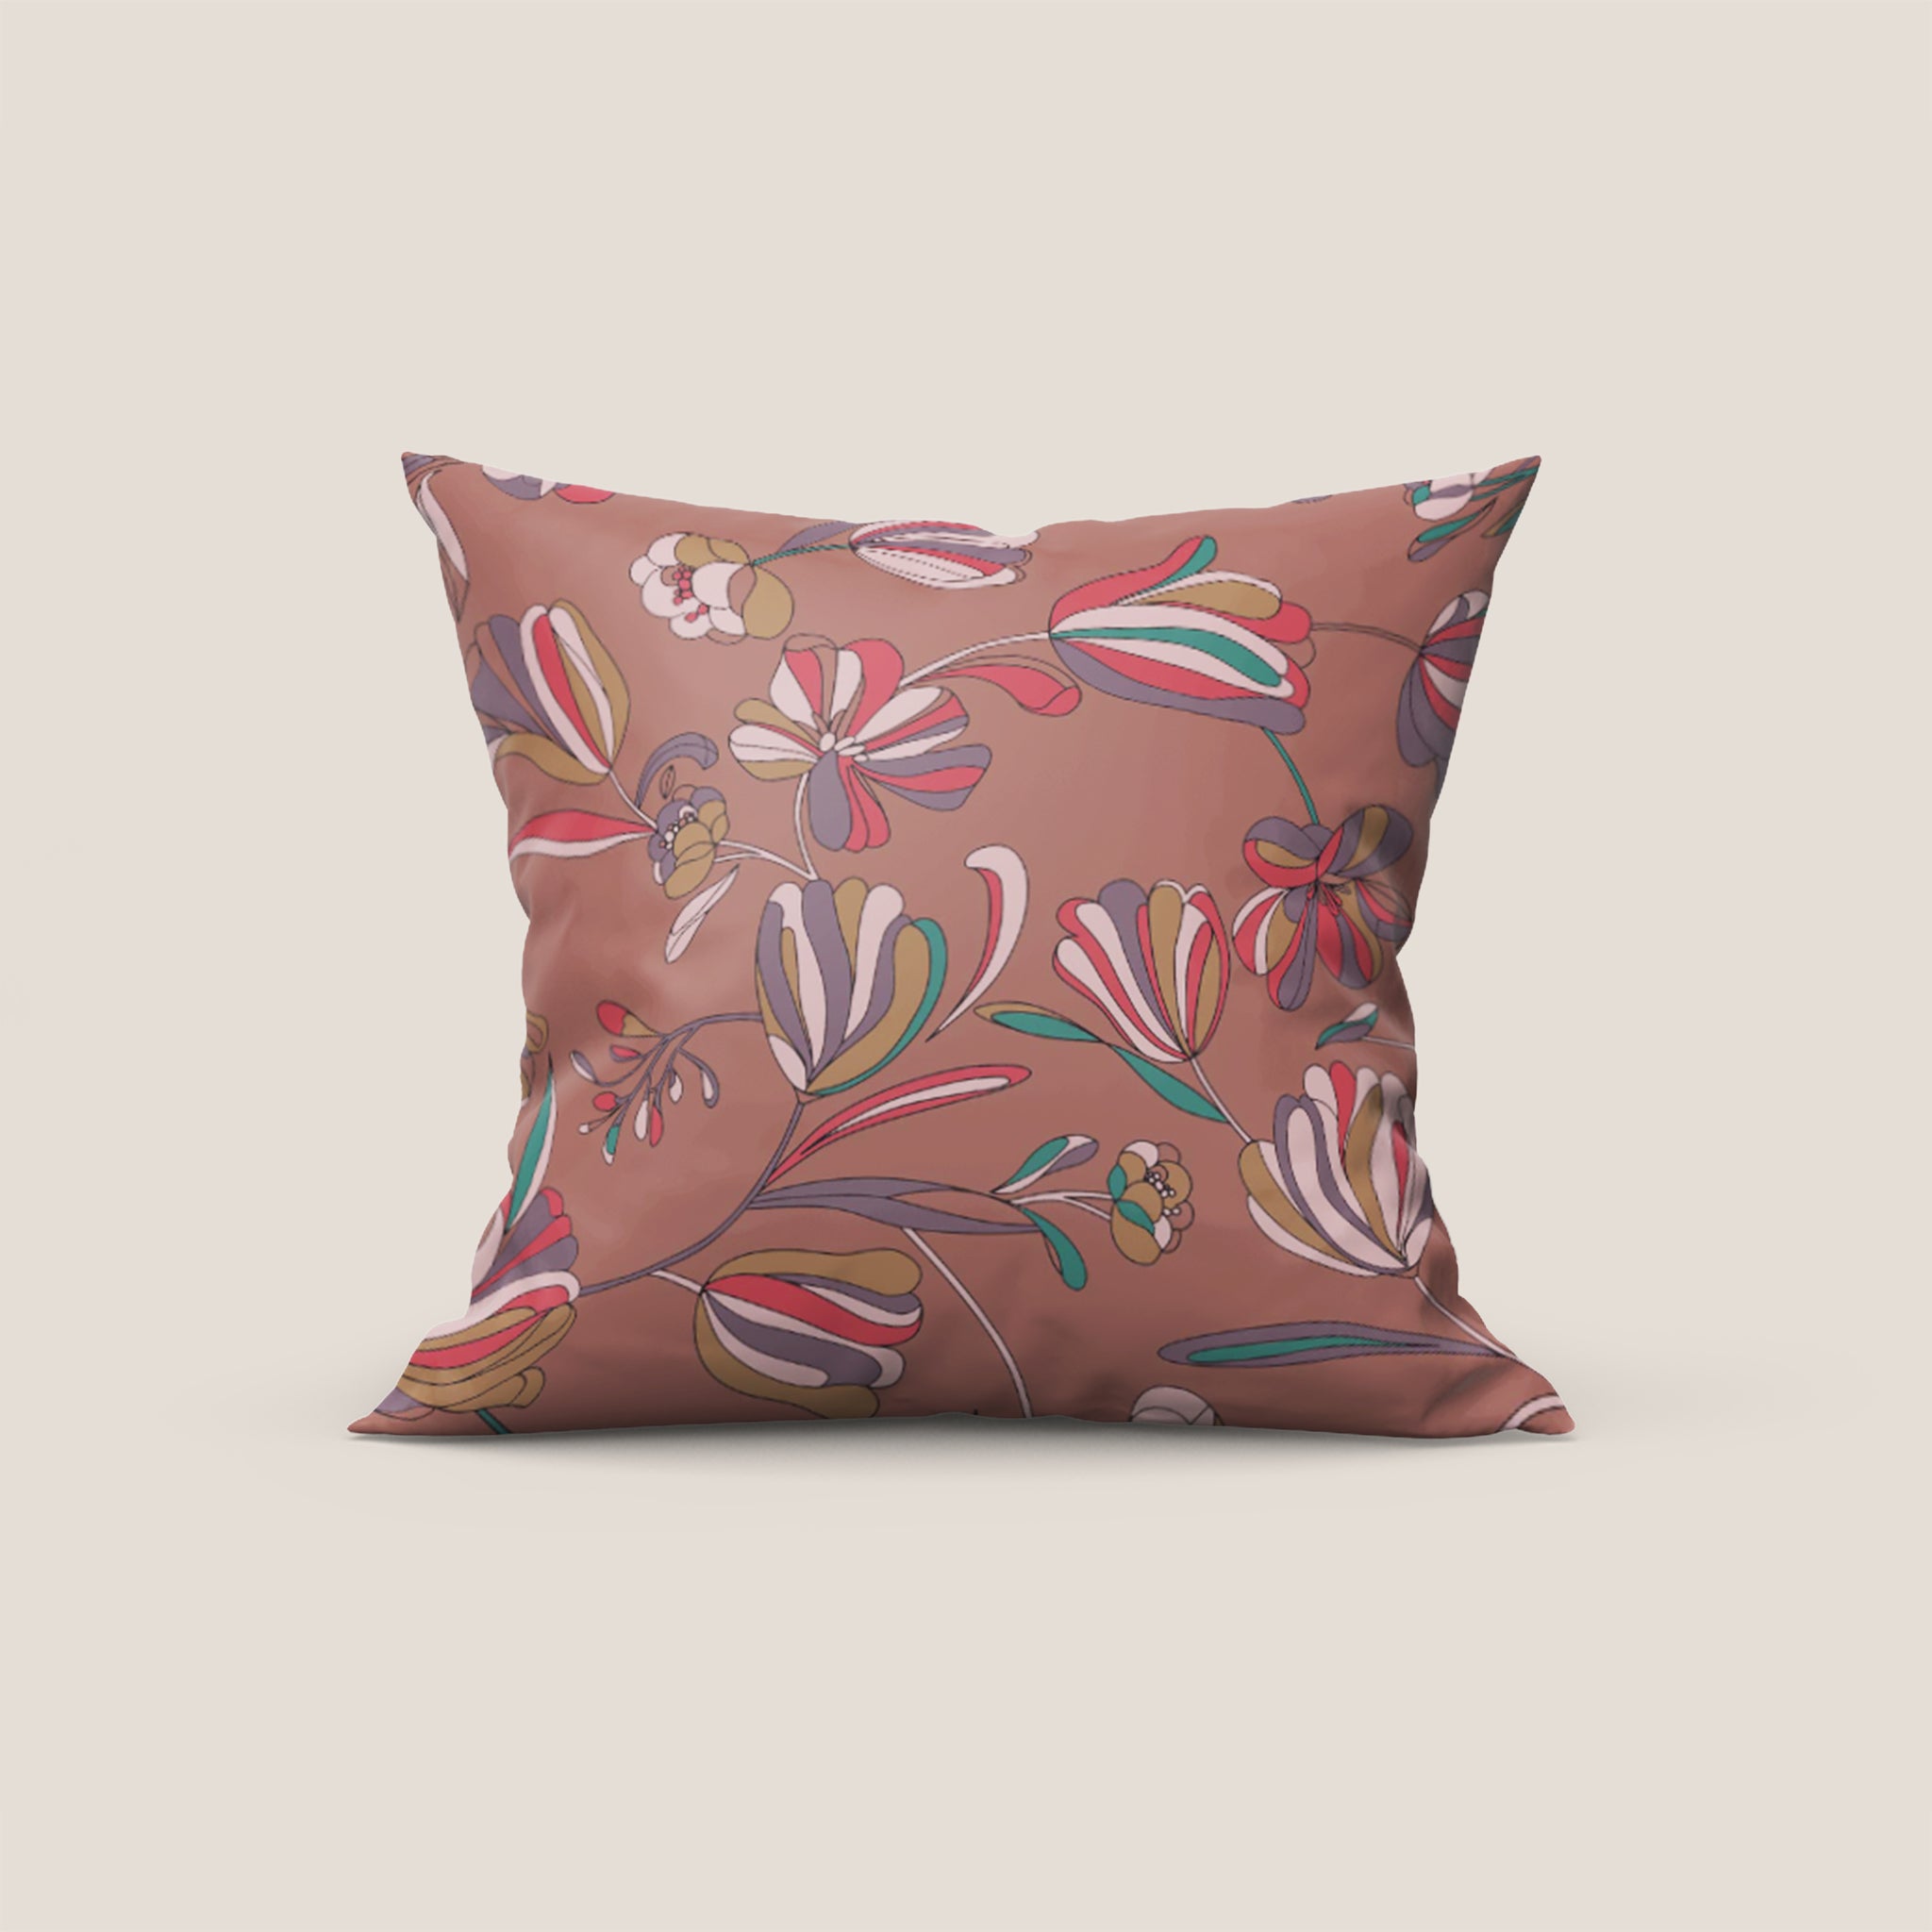 Omika collezione cuscini a fantasie multicolor in velluto impermeabile